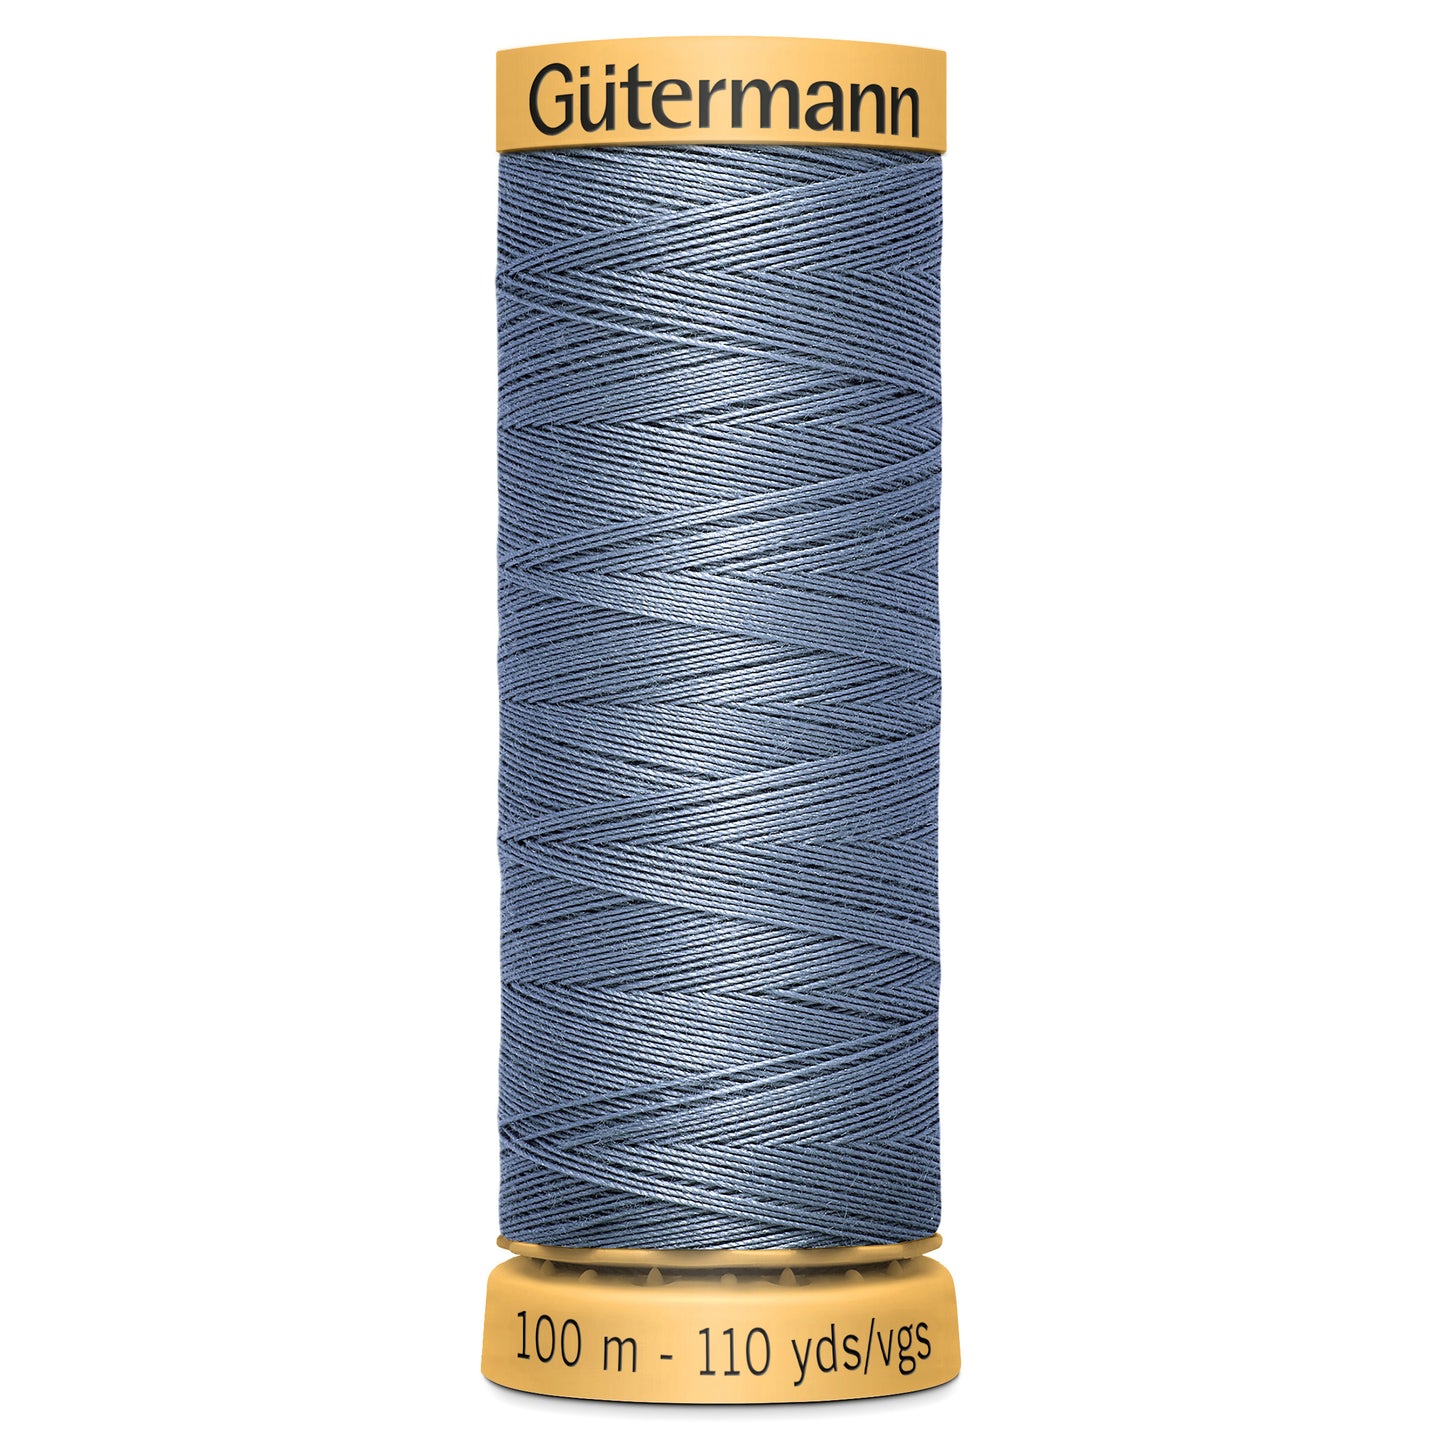 100m Gutermann 100% cotton thread